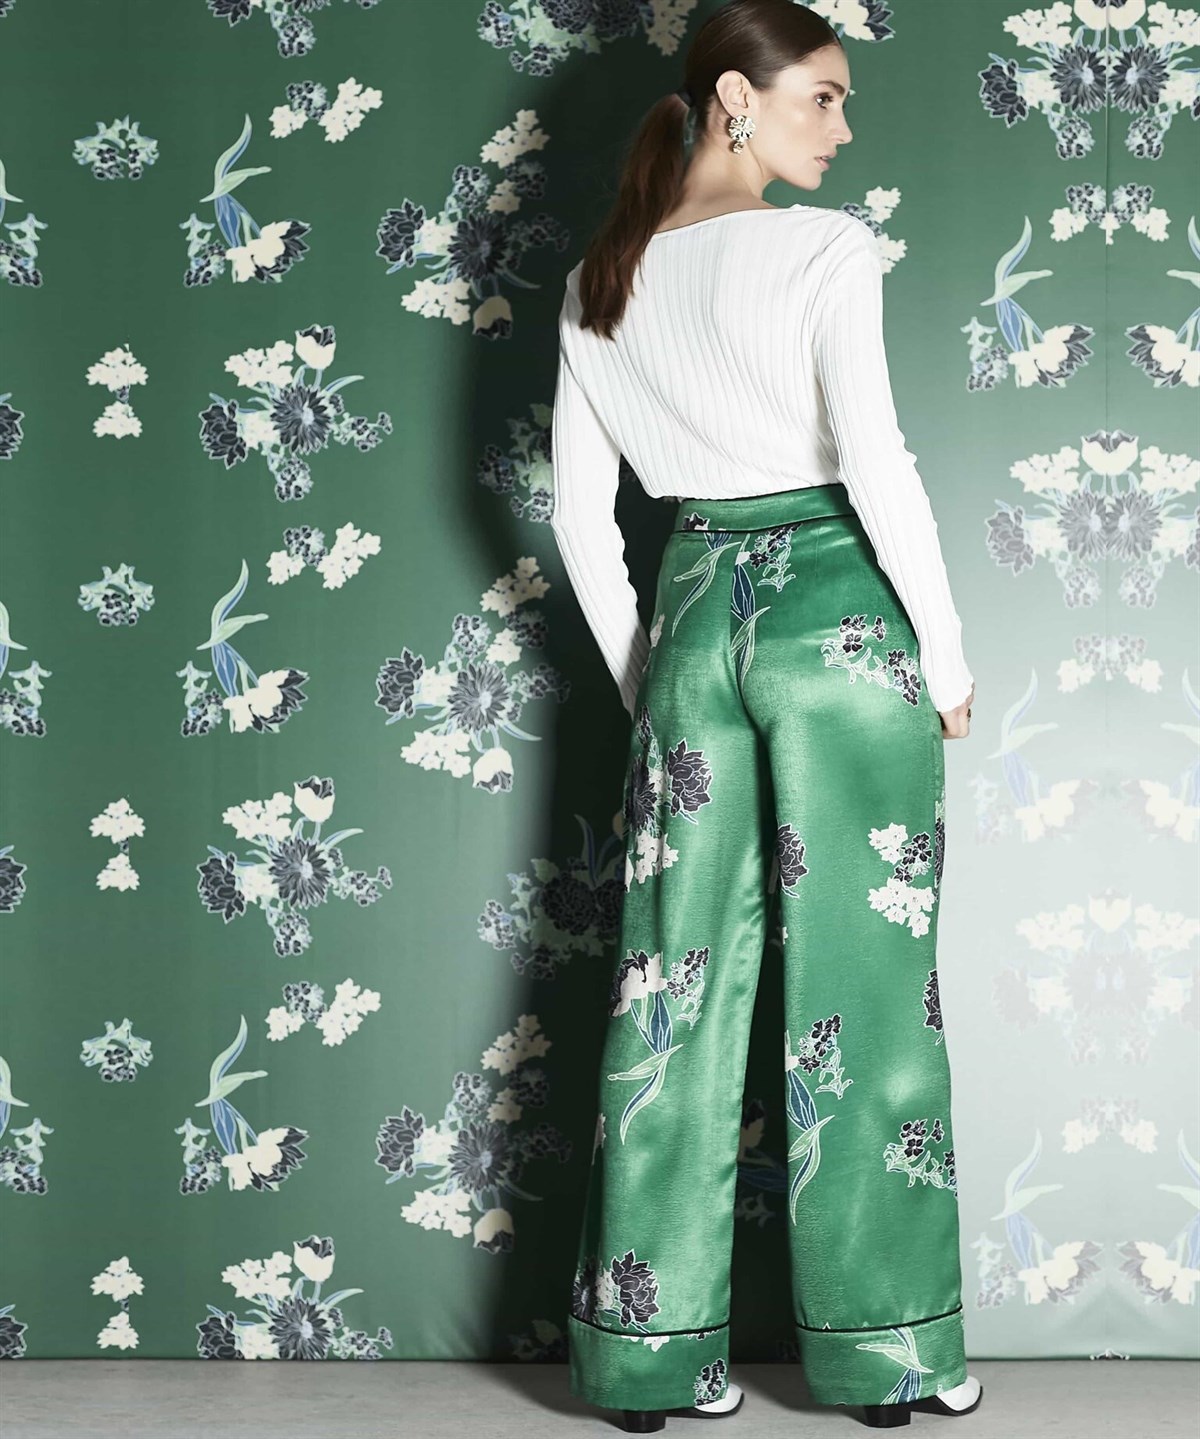 İPEKYOL Yüksek Bel Biye Geçişli Çiçek Desenli Yeşil Pantolon